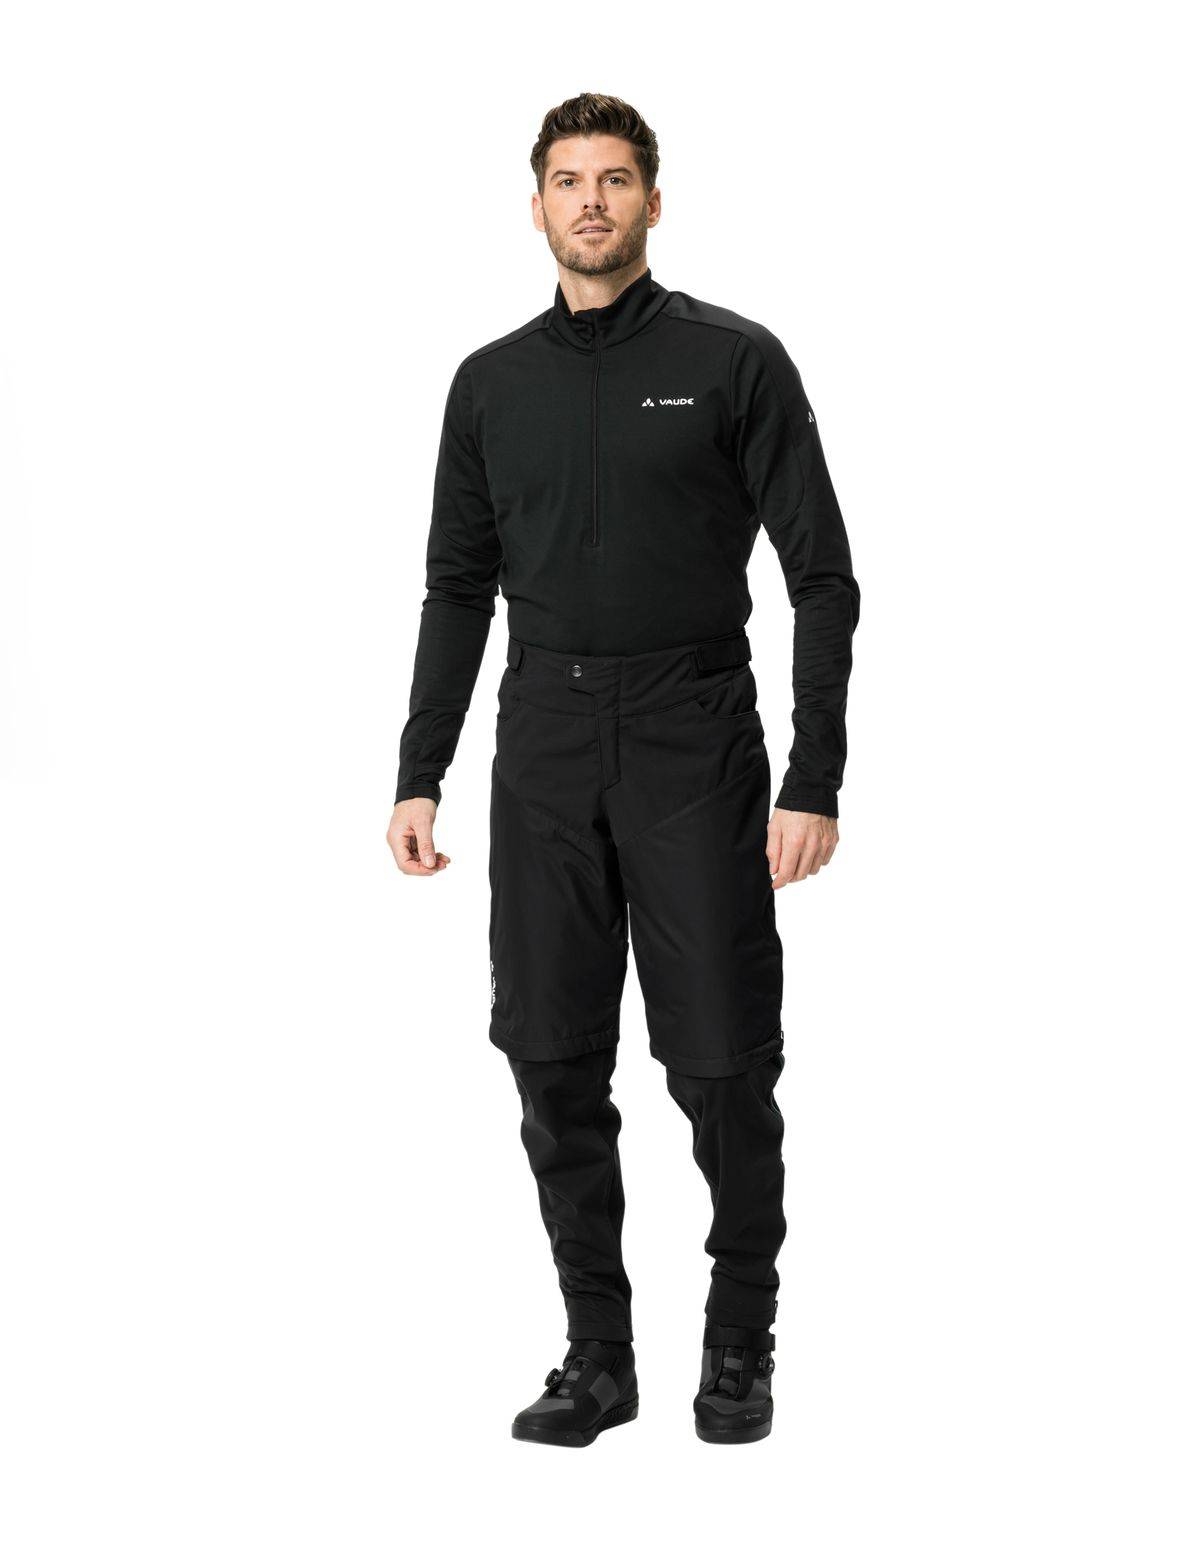 Image of Spodnie sportowe męskie 2 w 1 wielosezonowe Vaude Moab - czarne